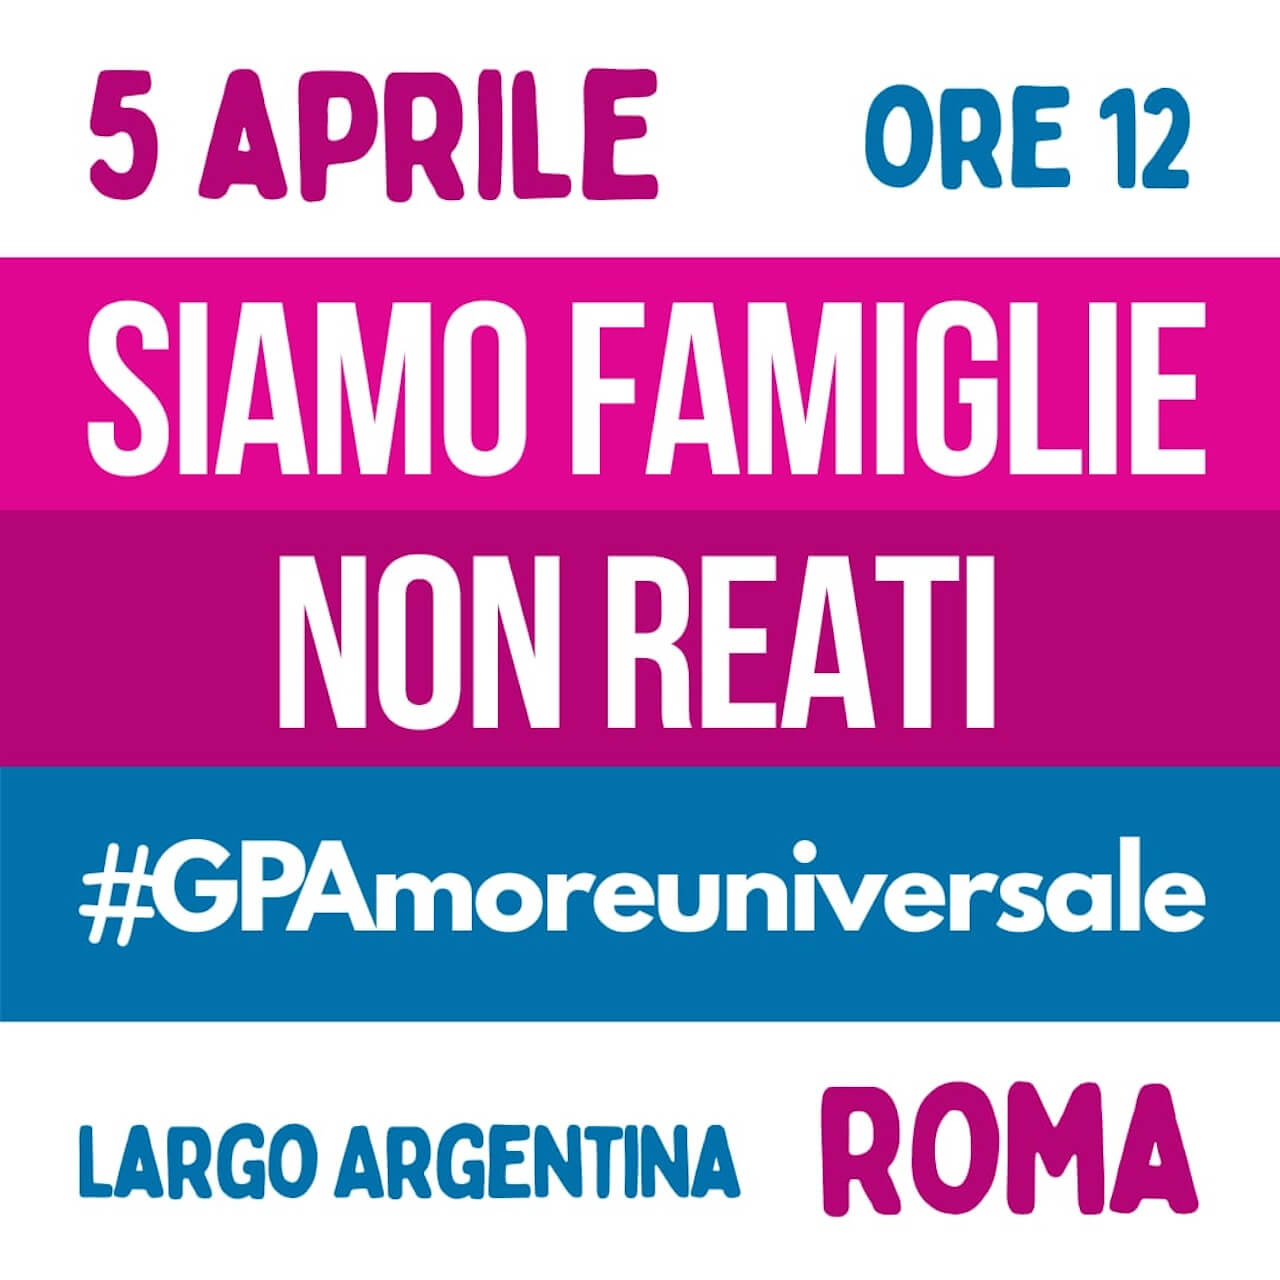 Venerdì 5 aprile ore 12 a Roma flashmob contro il DDL Varchi "GPA reato universale" del governo Meloni - Presidio - Gay.it